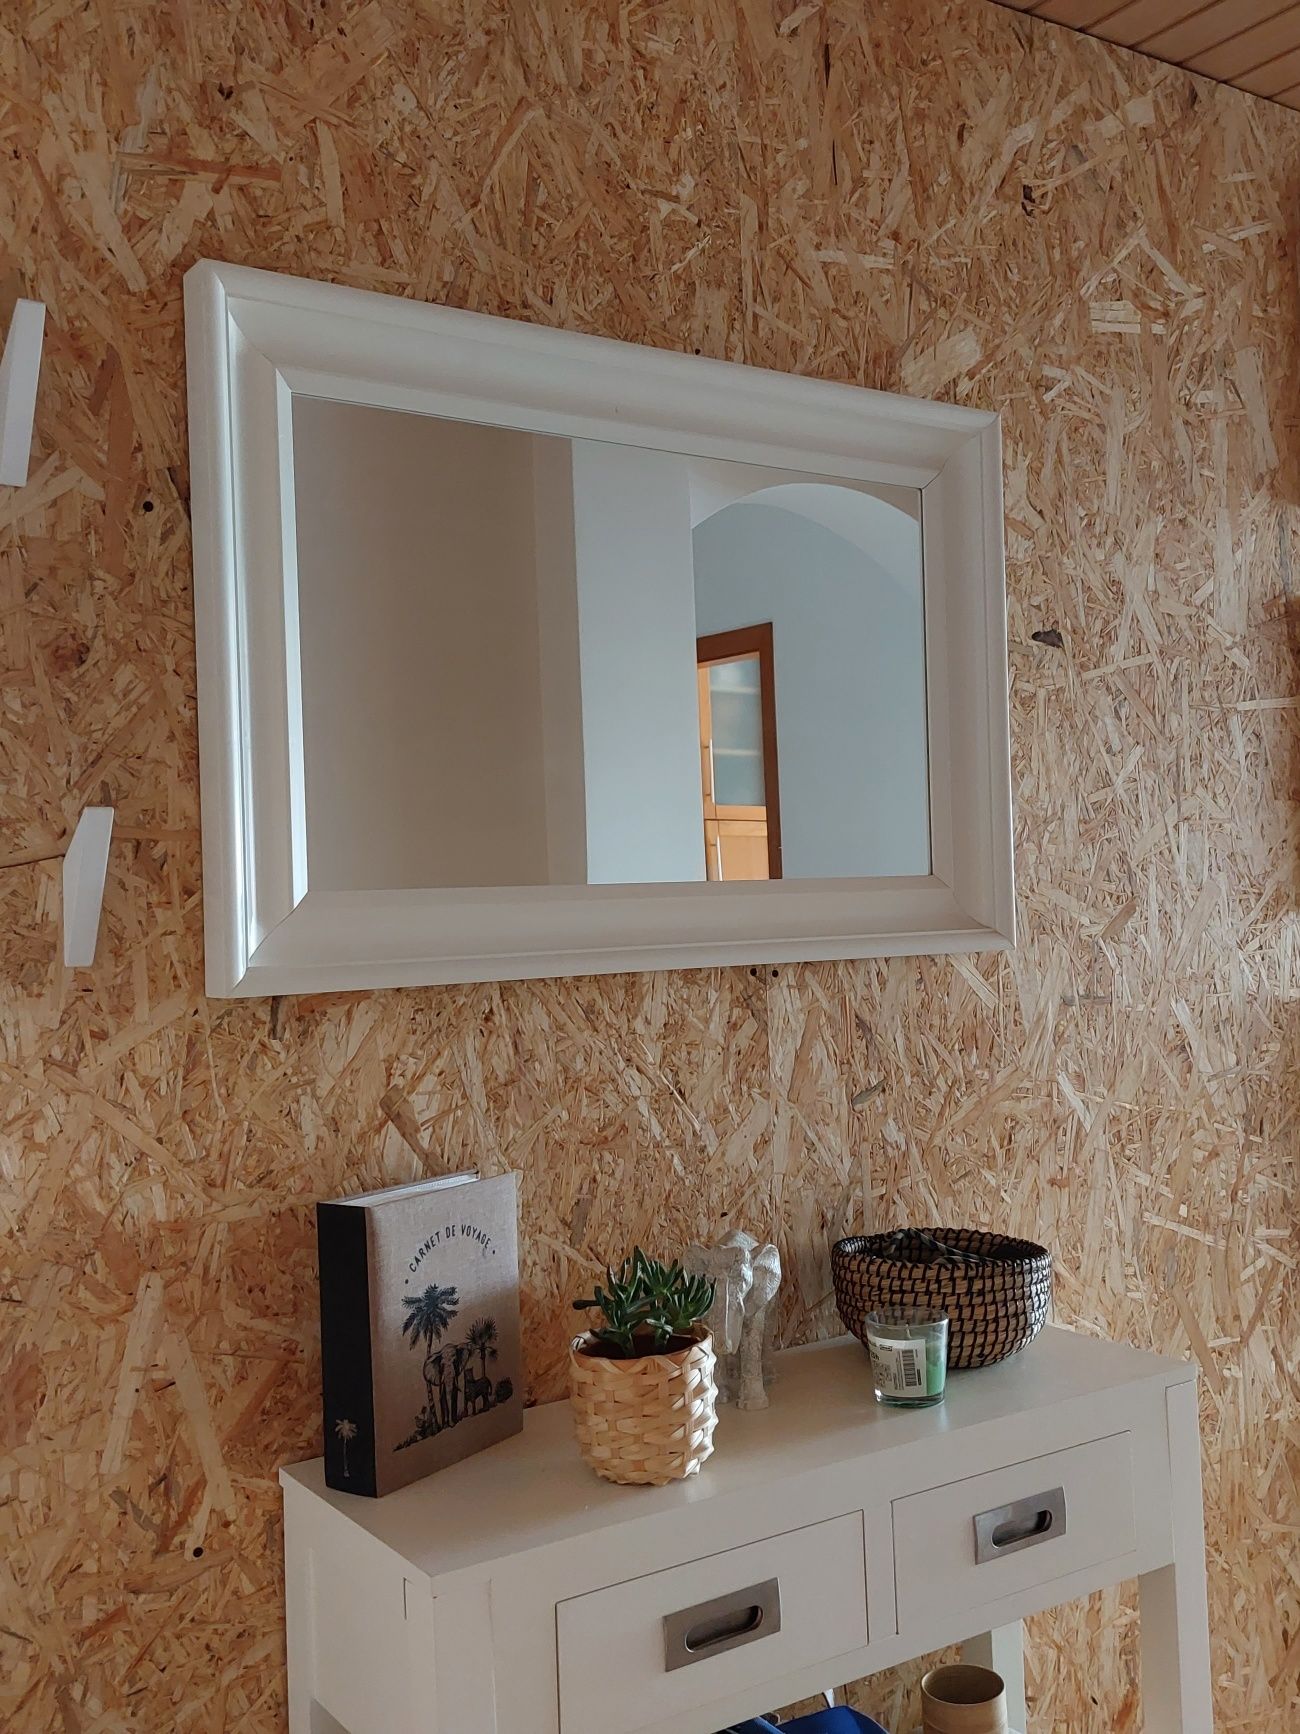 Consola e espelho brancos em madeira